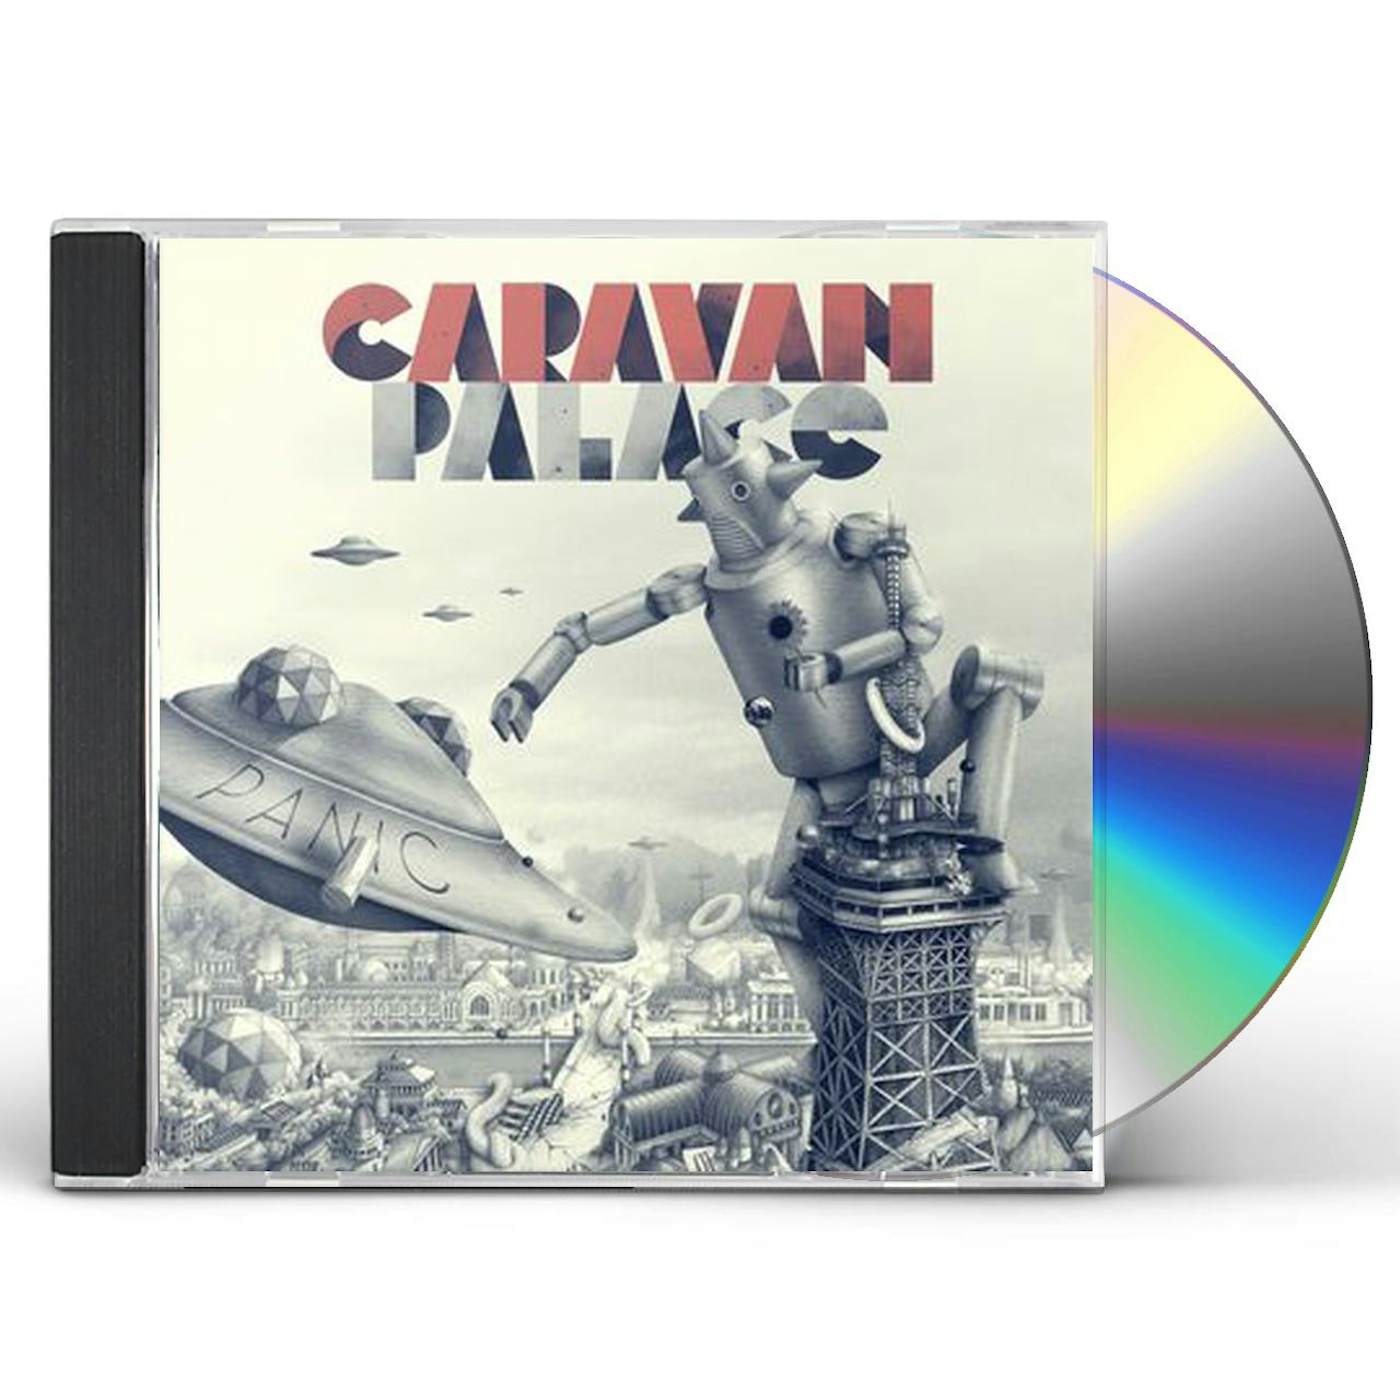 Caravan Palace PANIC CD